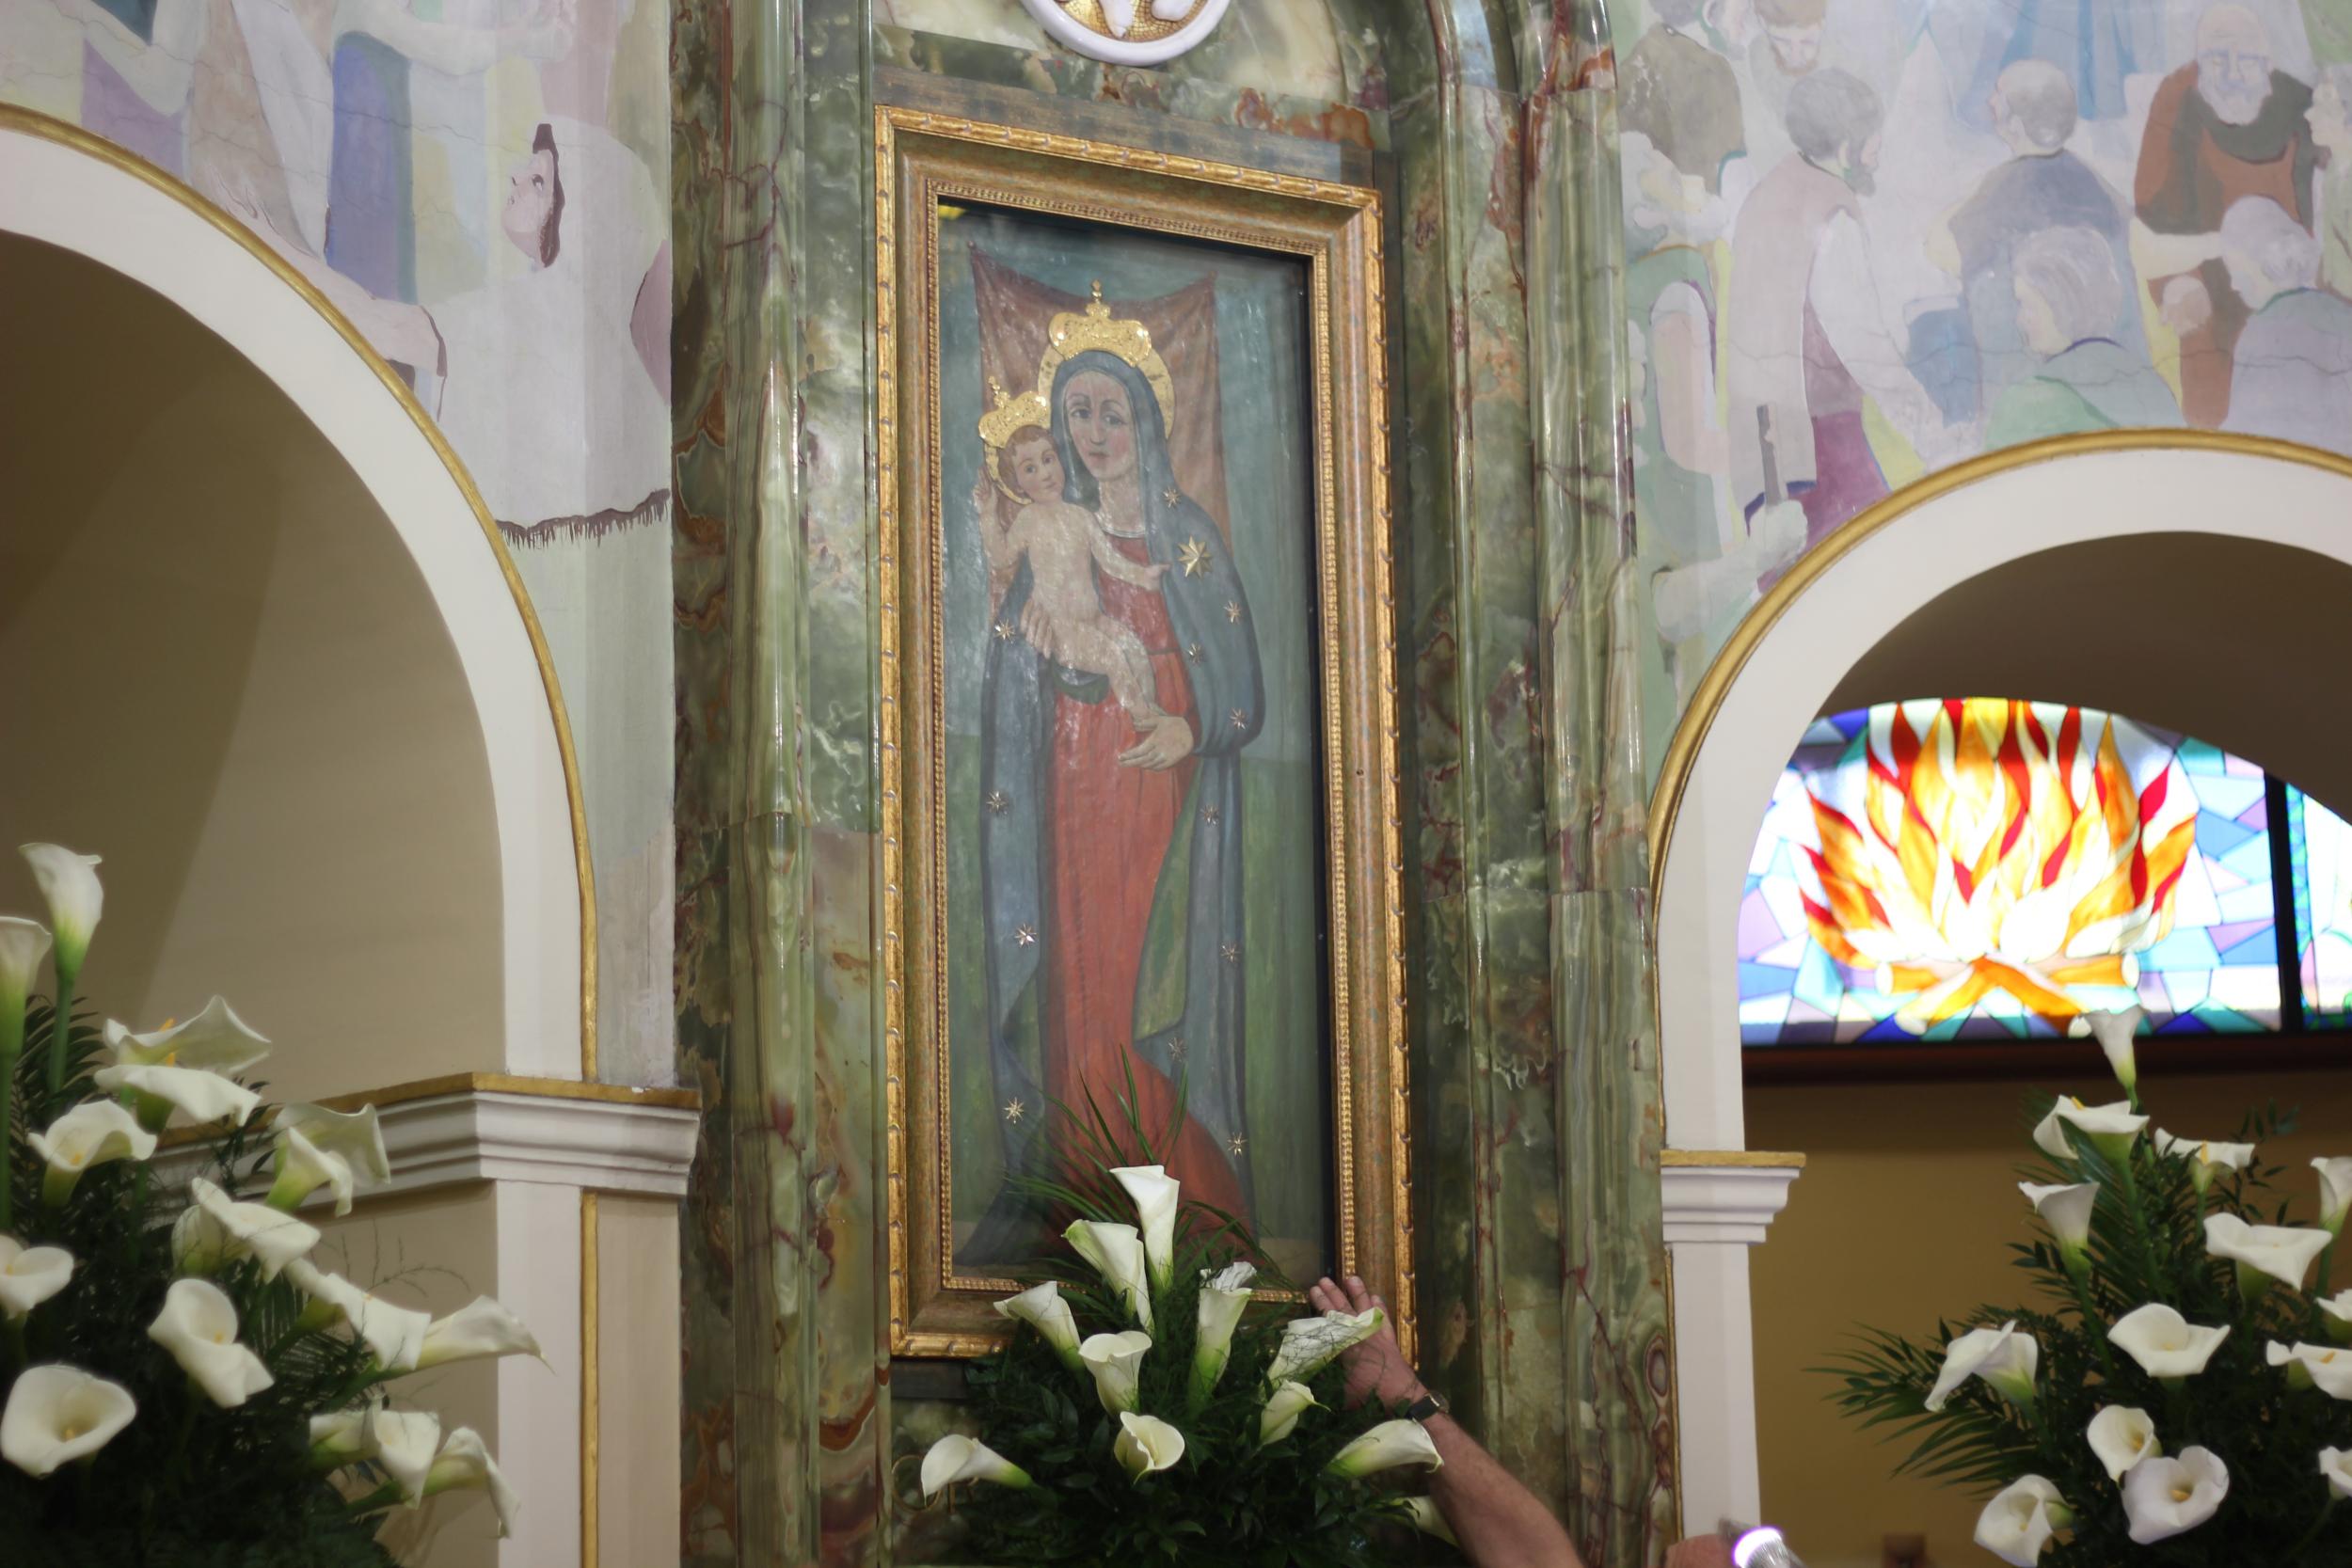 Omerita Ranalli, Il quadro della Madonna di Pietraquaria, fotografia digitale